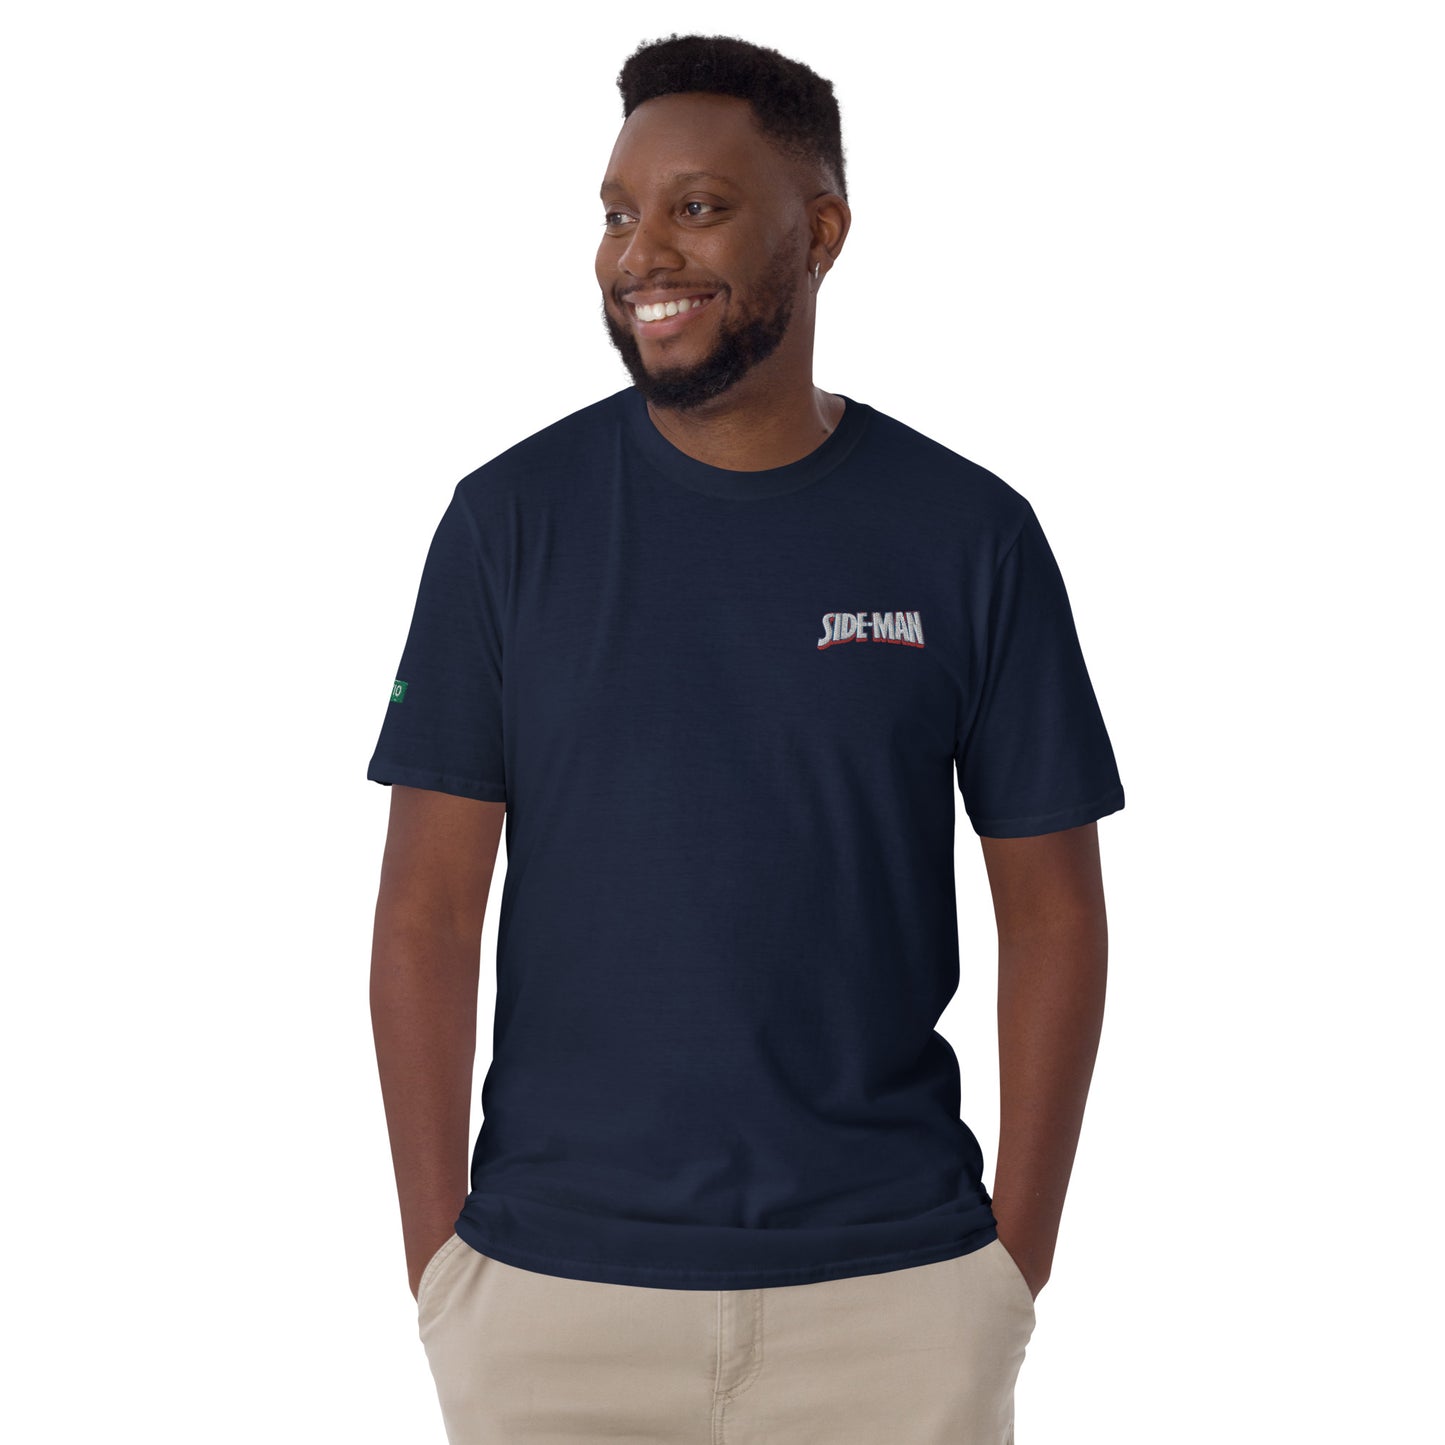 sideman short-sleeve unisex t-shirt